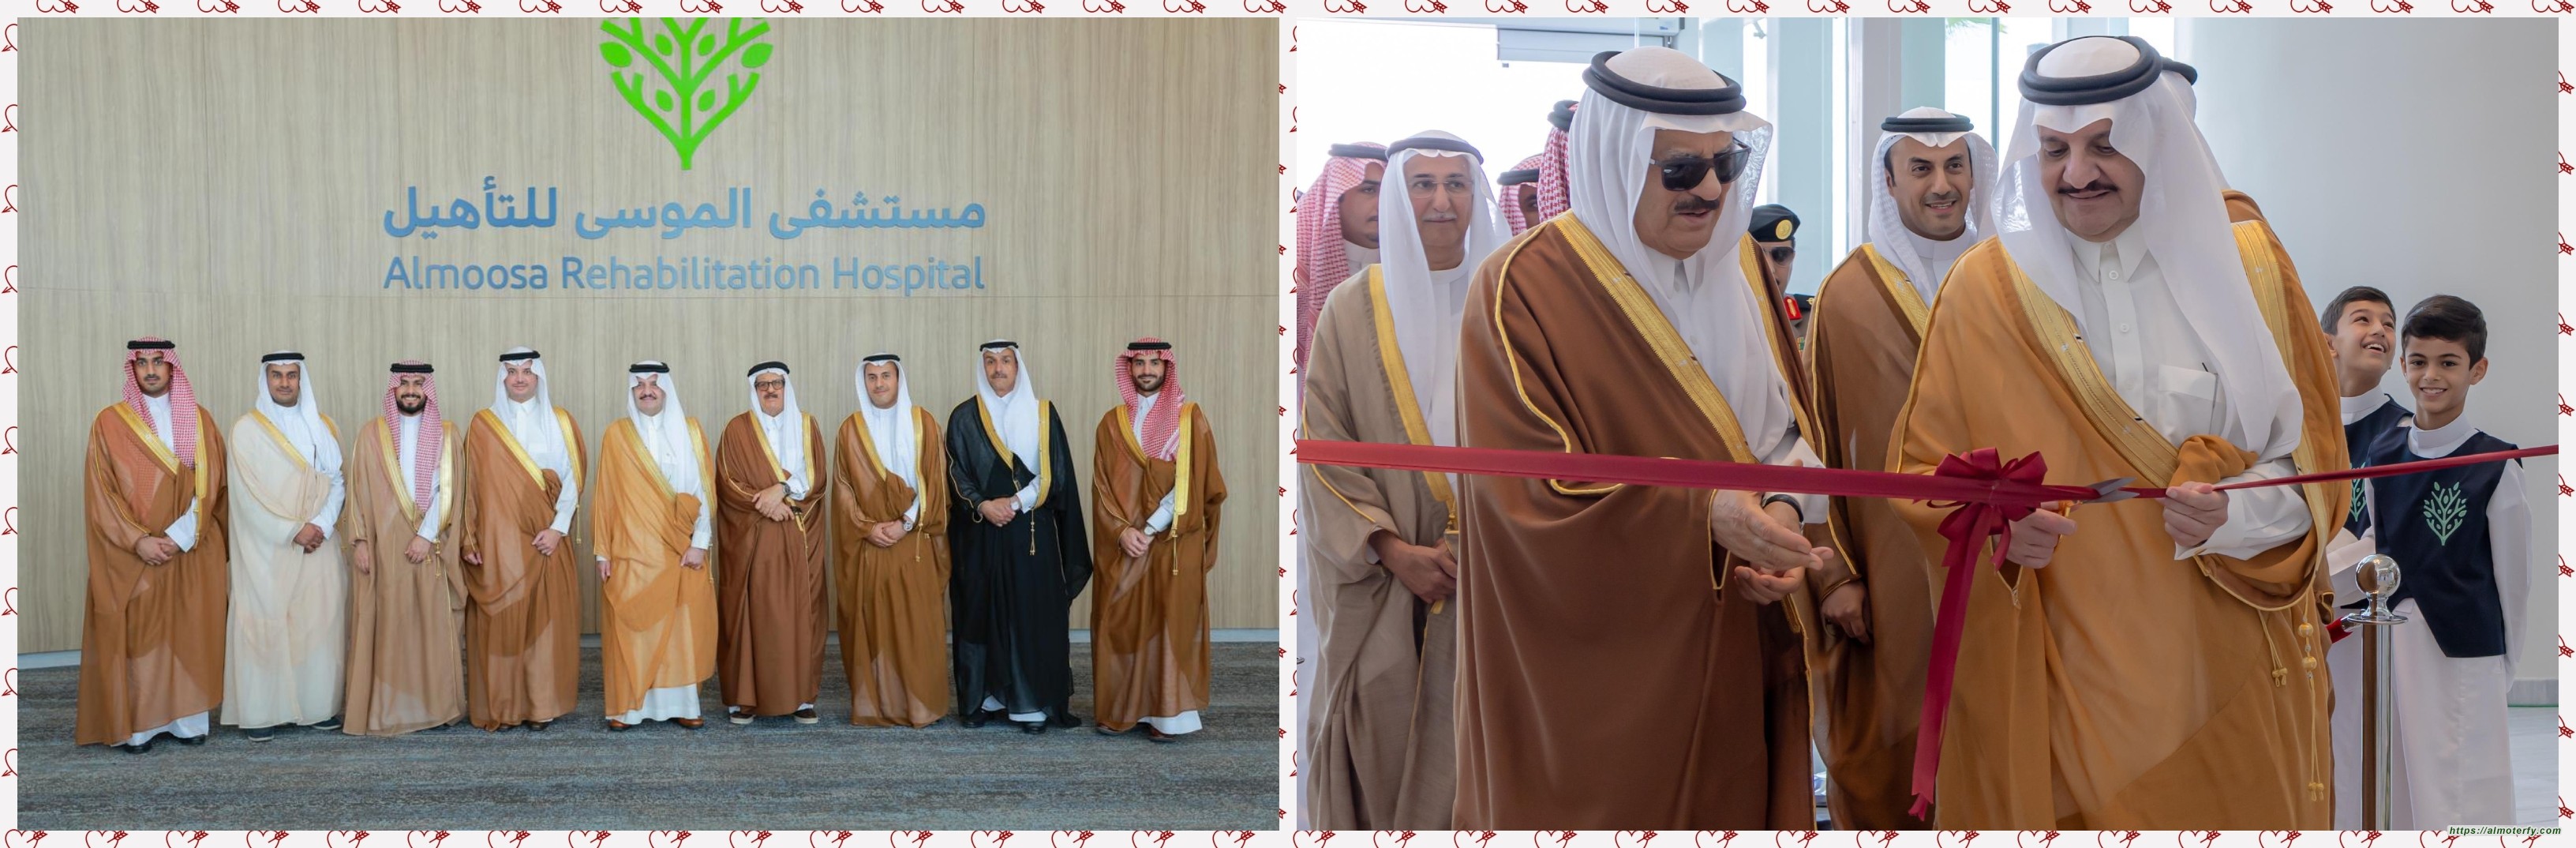 صاحب السمو الملكي الأمير سعود بن نايف بن عبد العزيز ال سعود يفتتح مستشفى الموسى للتأهيل بالاحساء